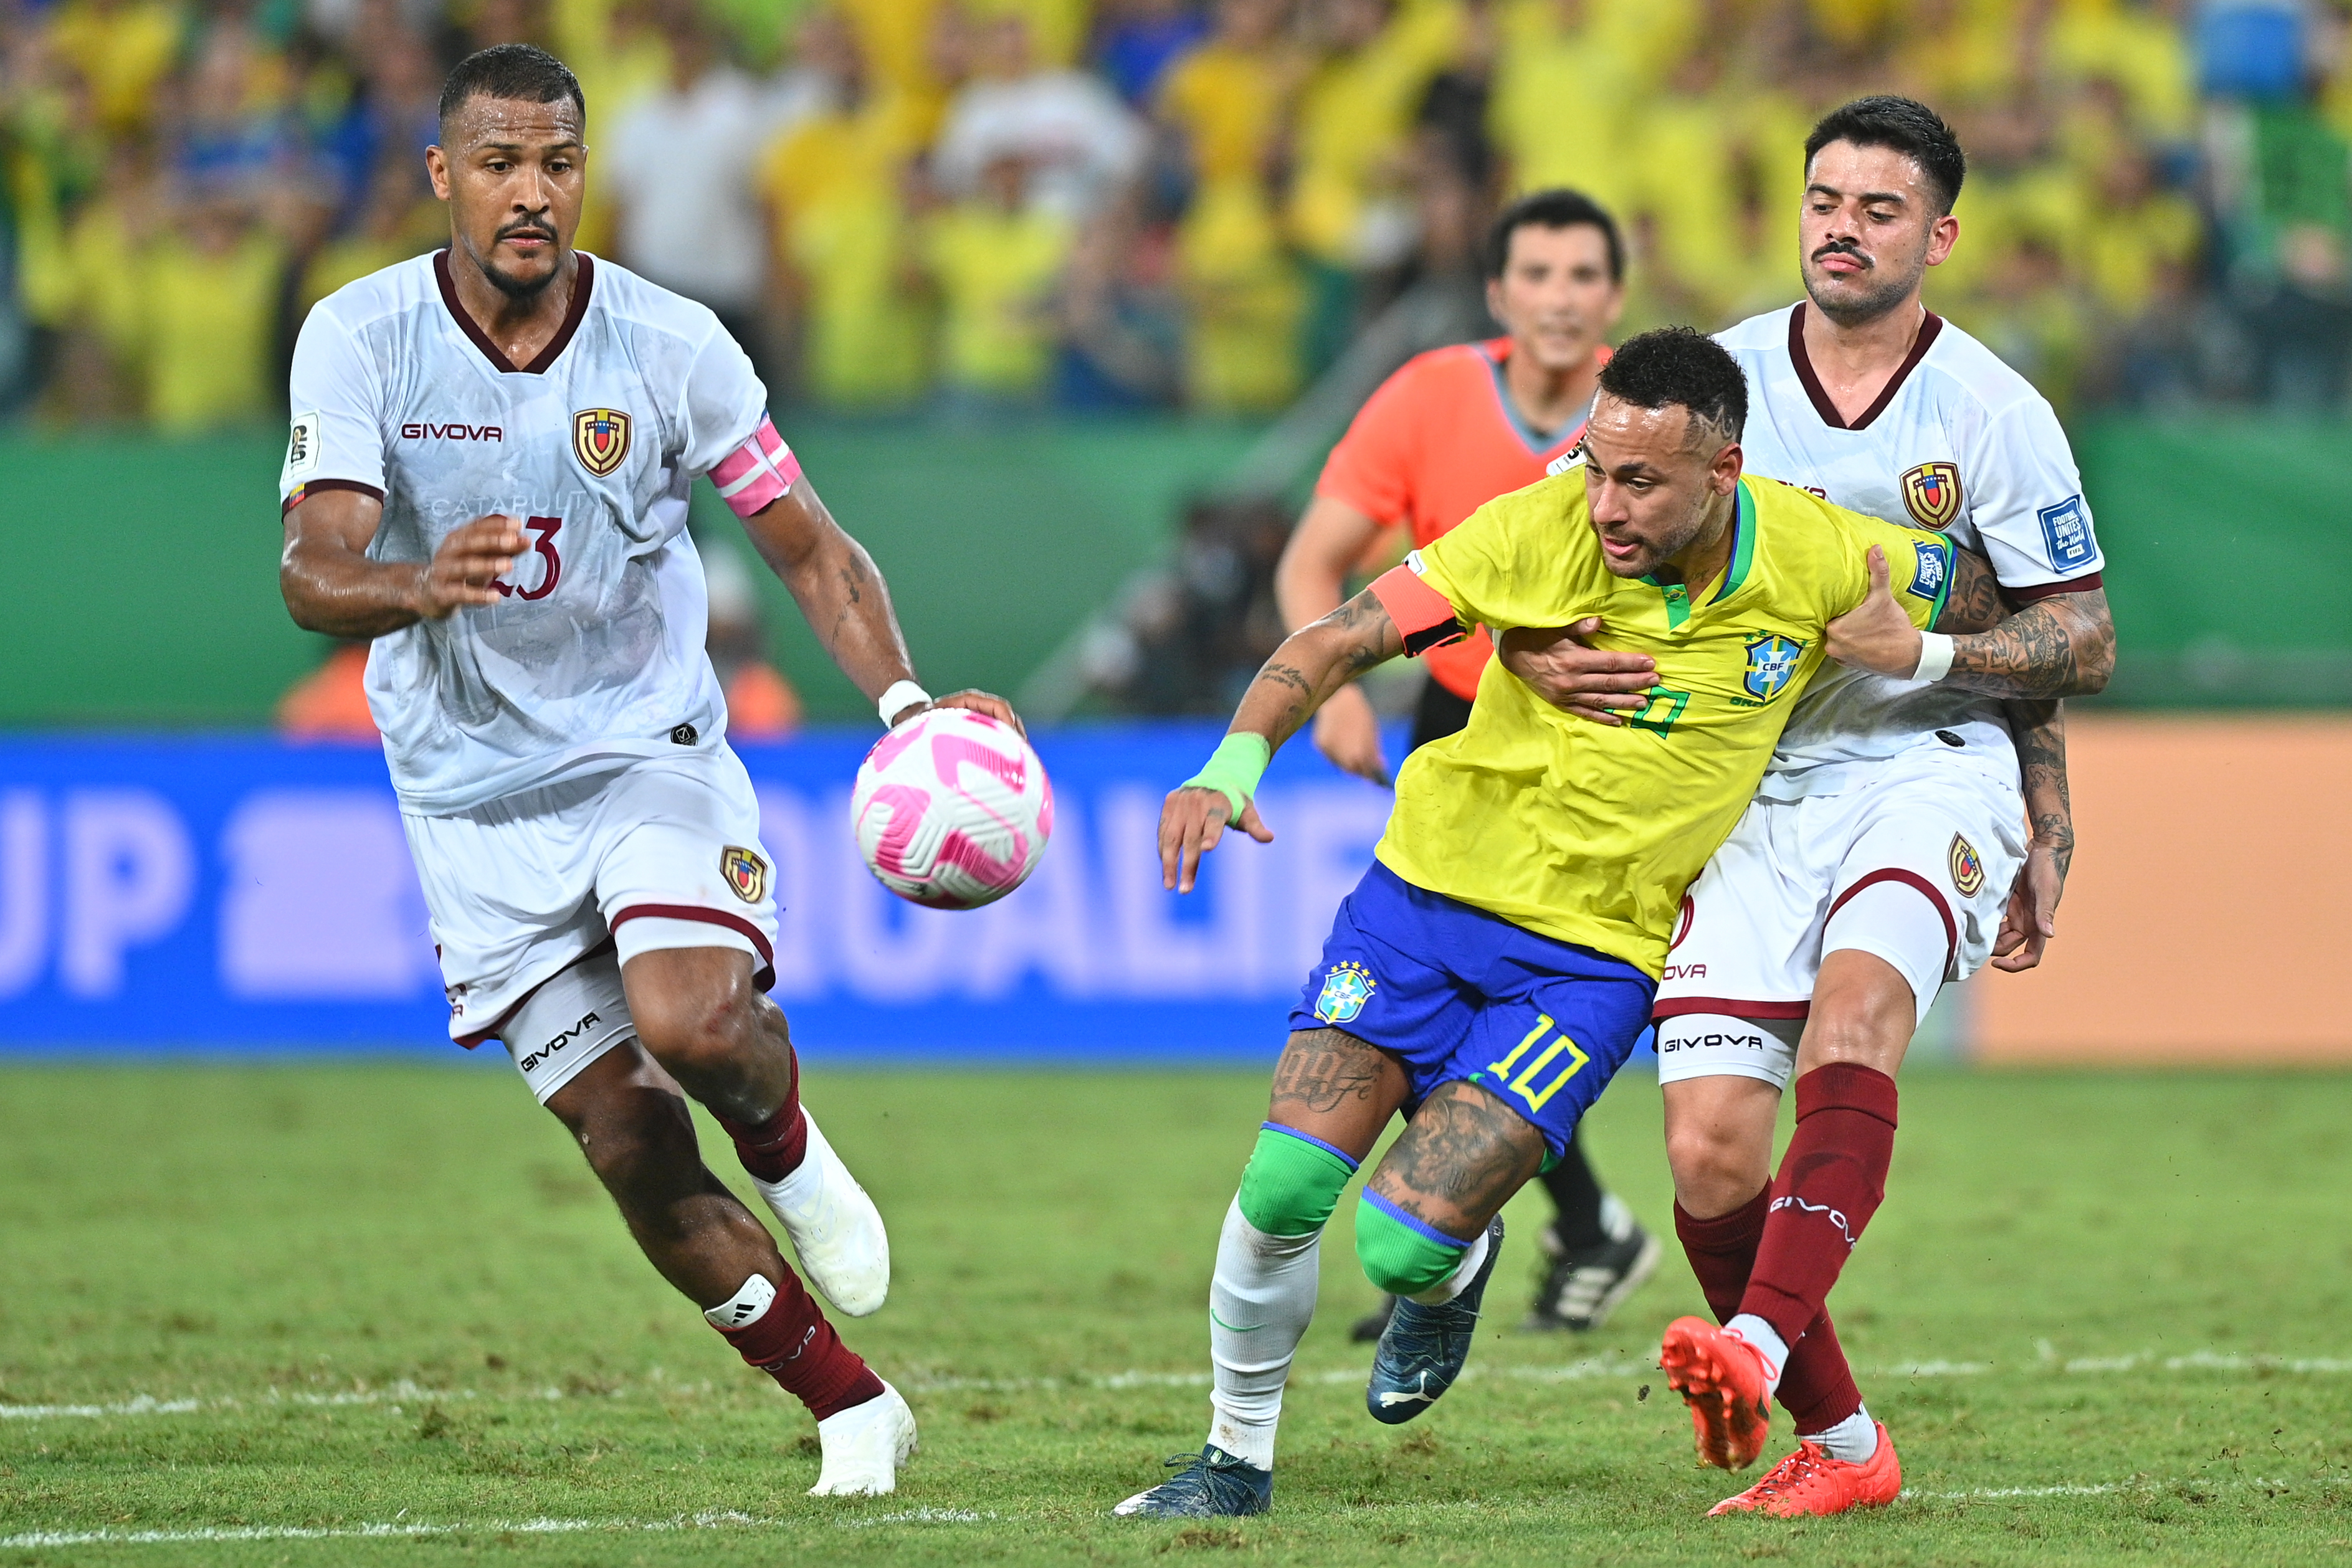 Venezuela consiguió un empate en los últimos minutos ante Brasil